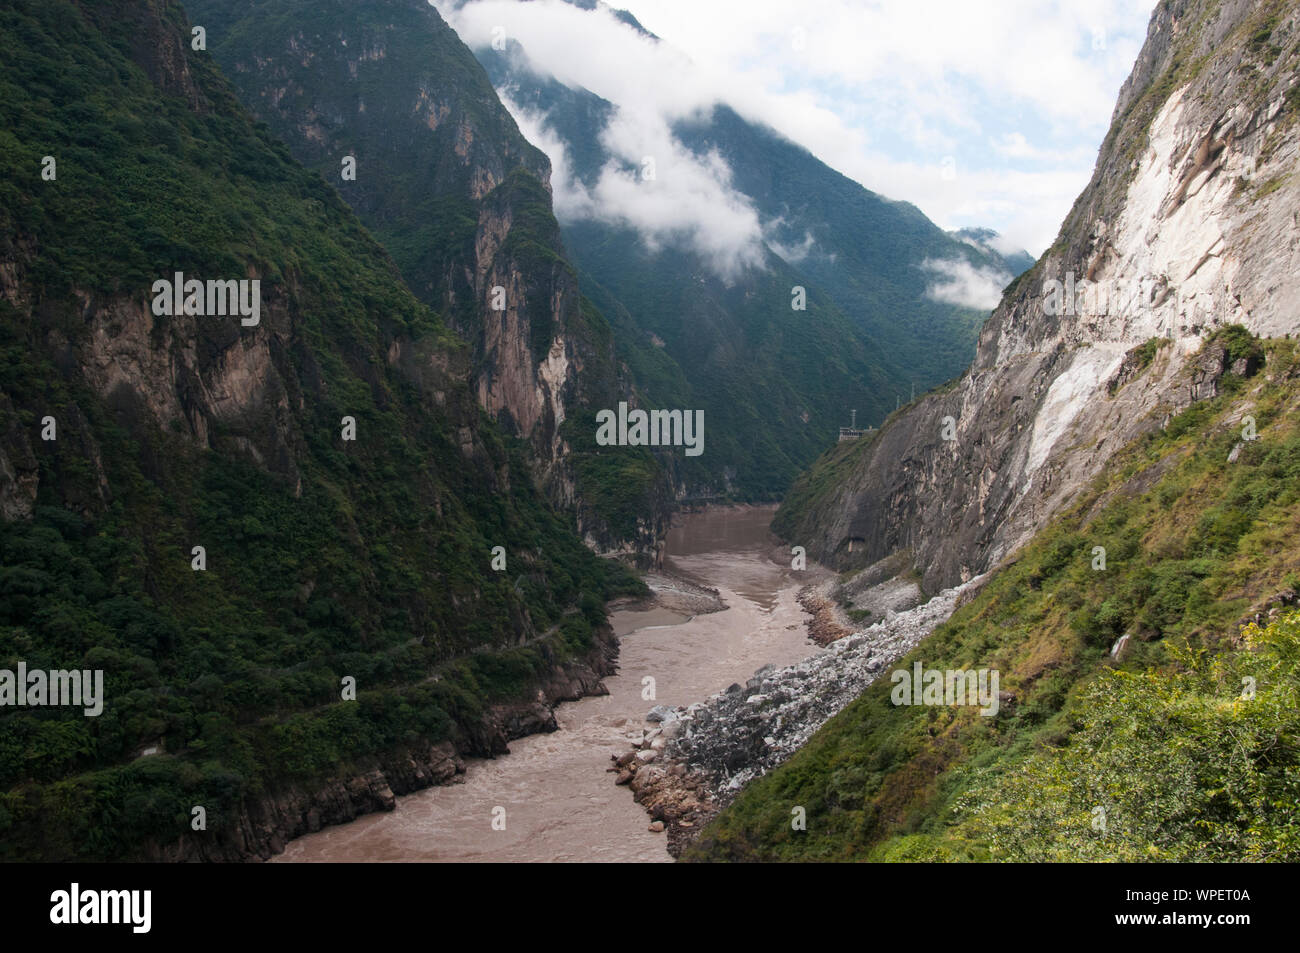 Tiger saltando Gorge es un cañón en el río Jinsha, afluente del Yangtze superior. Se encuentra a 60 km (37 millas) de N de Lijiang, Yunnan en el sudoeste de China. T Foto de stock